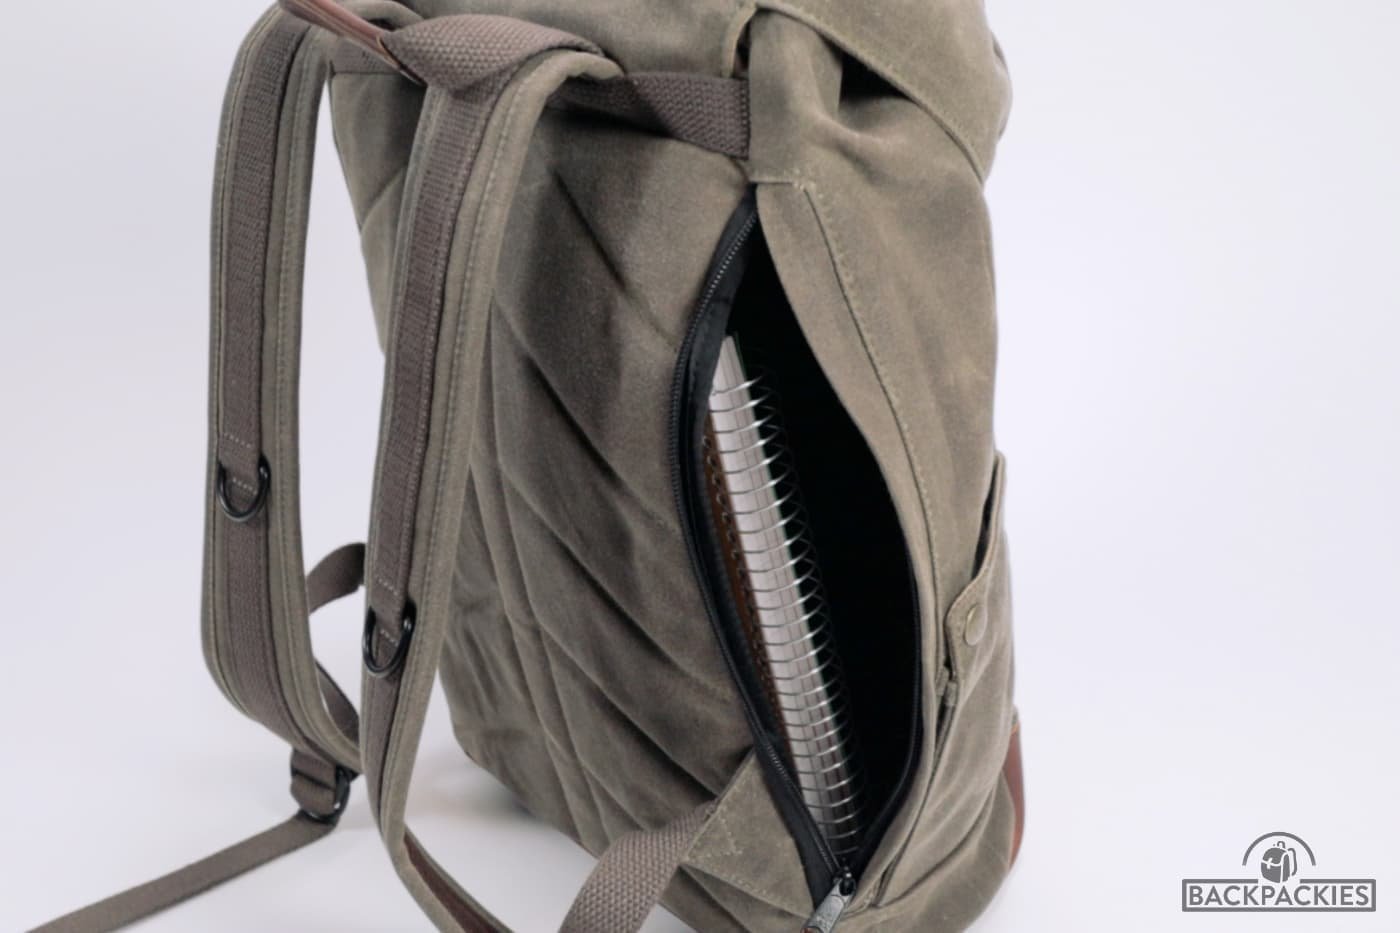 Nutsac Rucksac backpack with side zipper